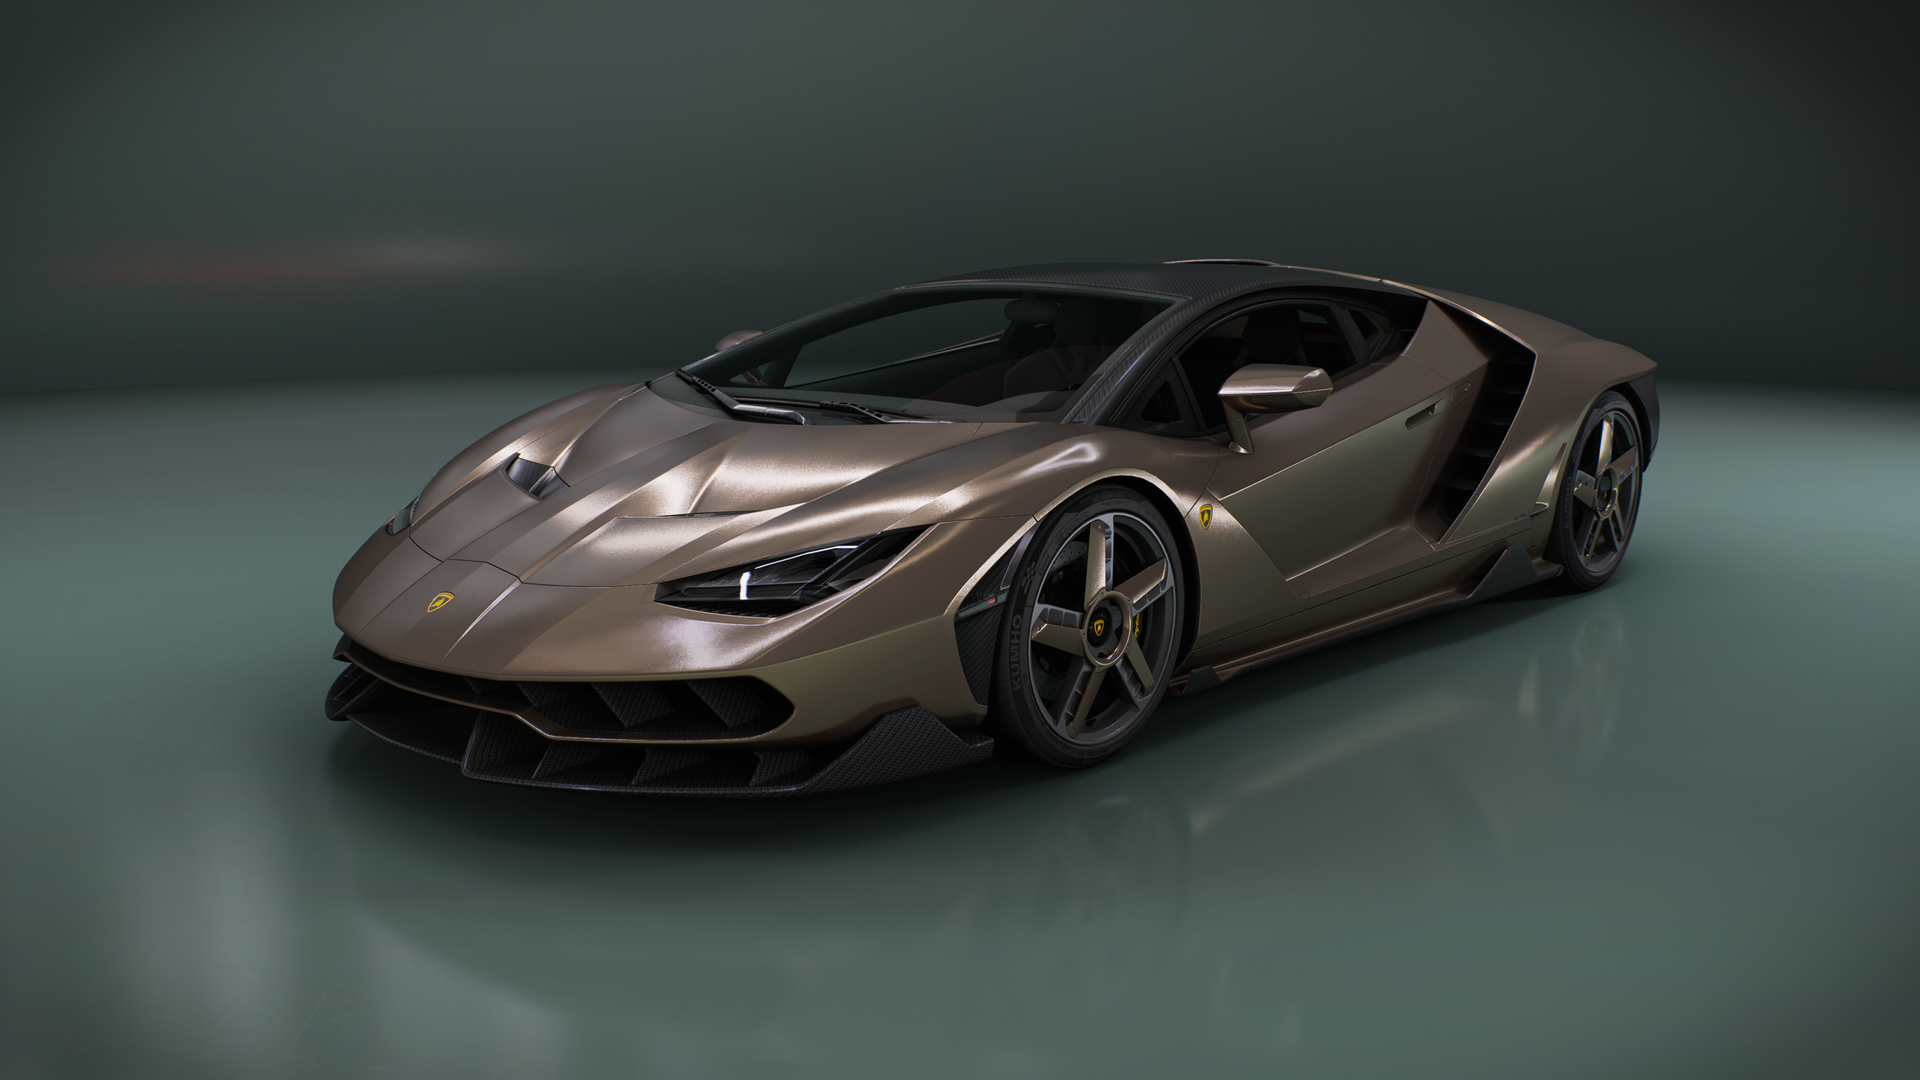 Lamborghini Centenario - Gallery - D5 RENDER FORUM